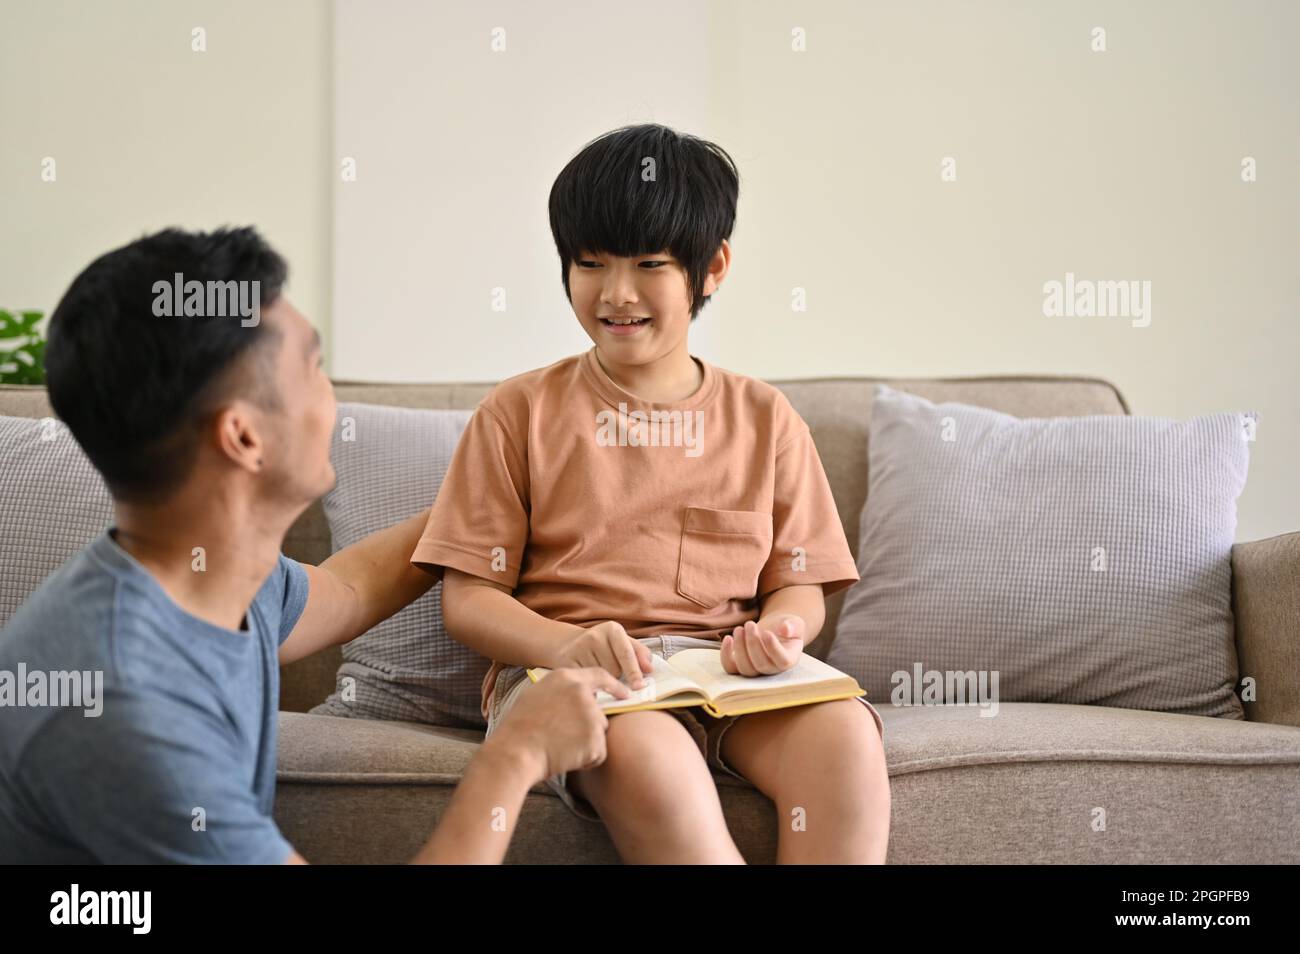 Ein bezaubernder und glücklicher junger asiatischer Junge, der mit seinem Vater spricht, während er Zeit verbringt und zusammen im Wohnzimmer ein Märchen liest. Alleinerziehender Vater und Kind Stockfoto